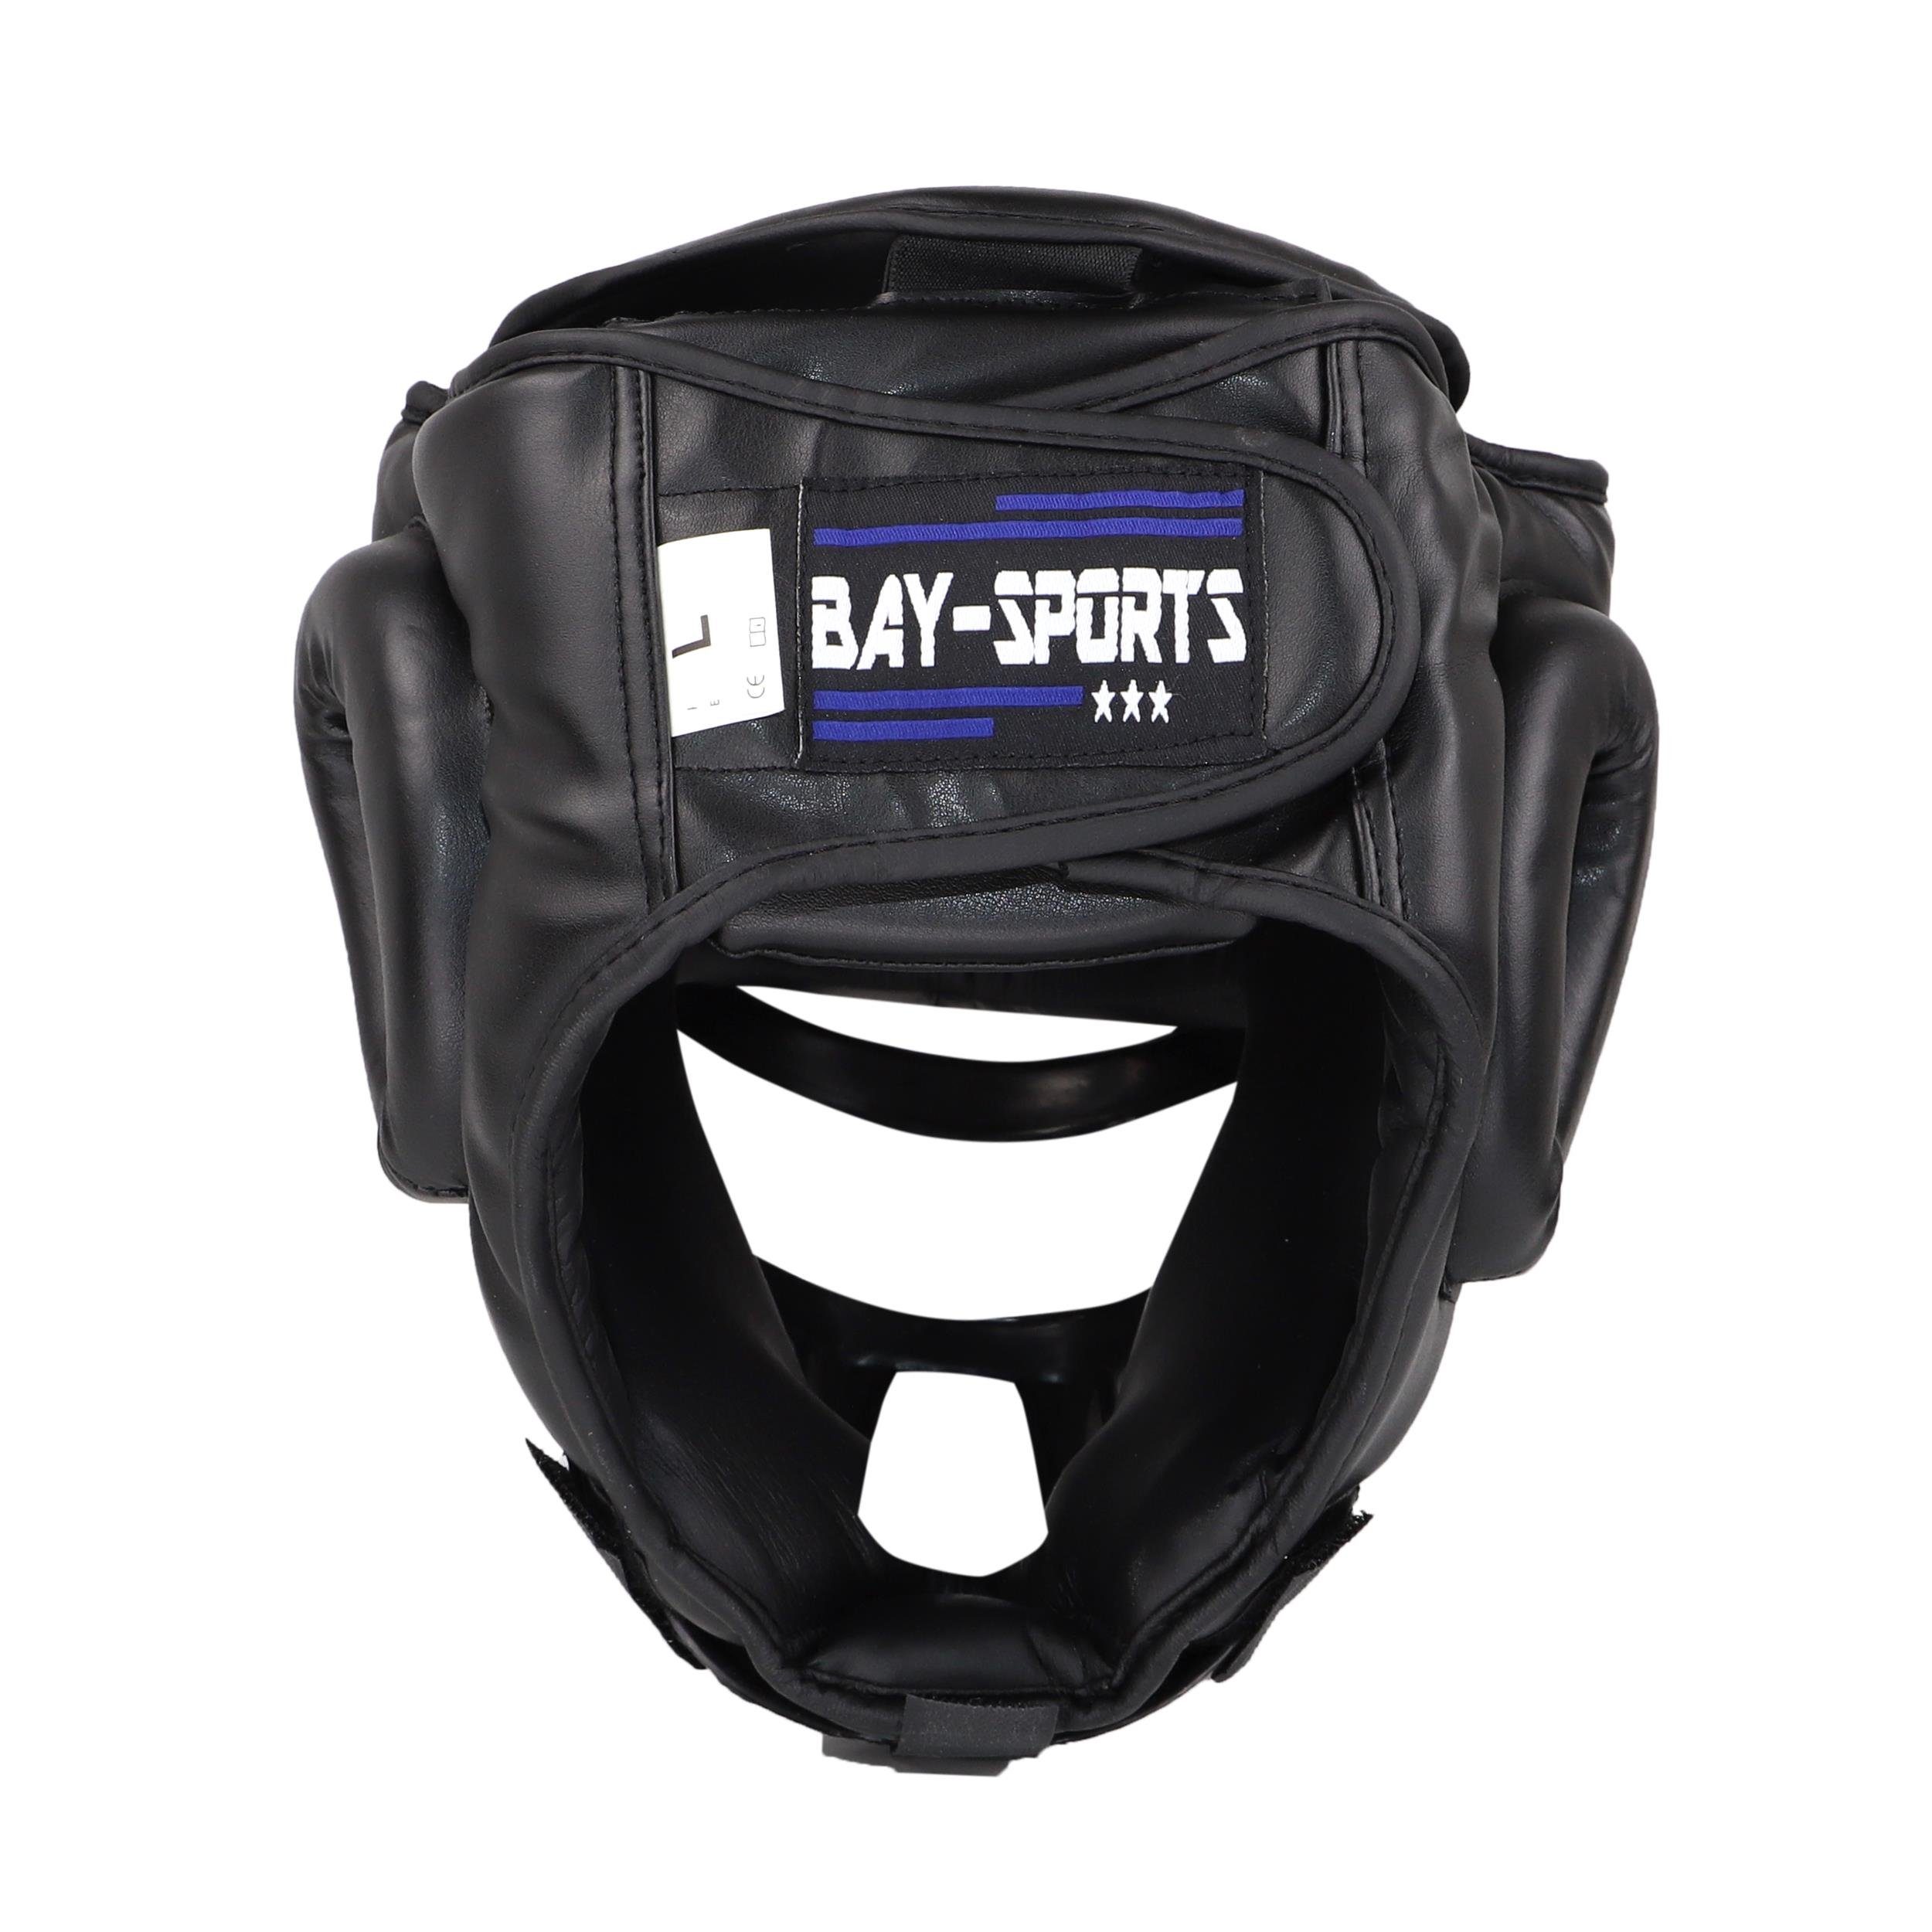 BAY-Sports Kopfschutz Kampfsport Gitter Maske Maga Kick - Vollkontakt, XL Waffenkampf, Budo, Boxen S Luxusausgührung, SV, Krav